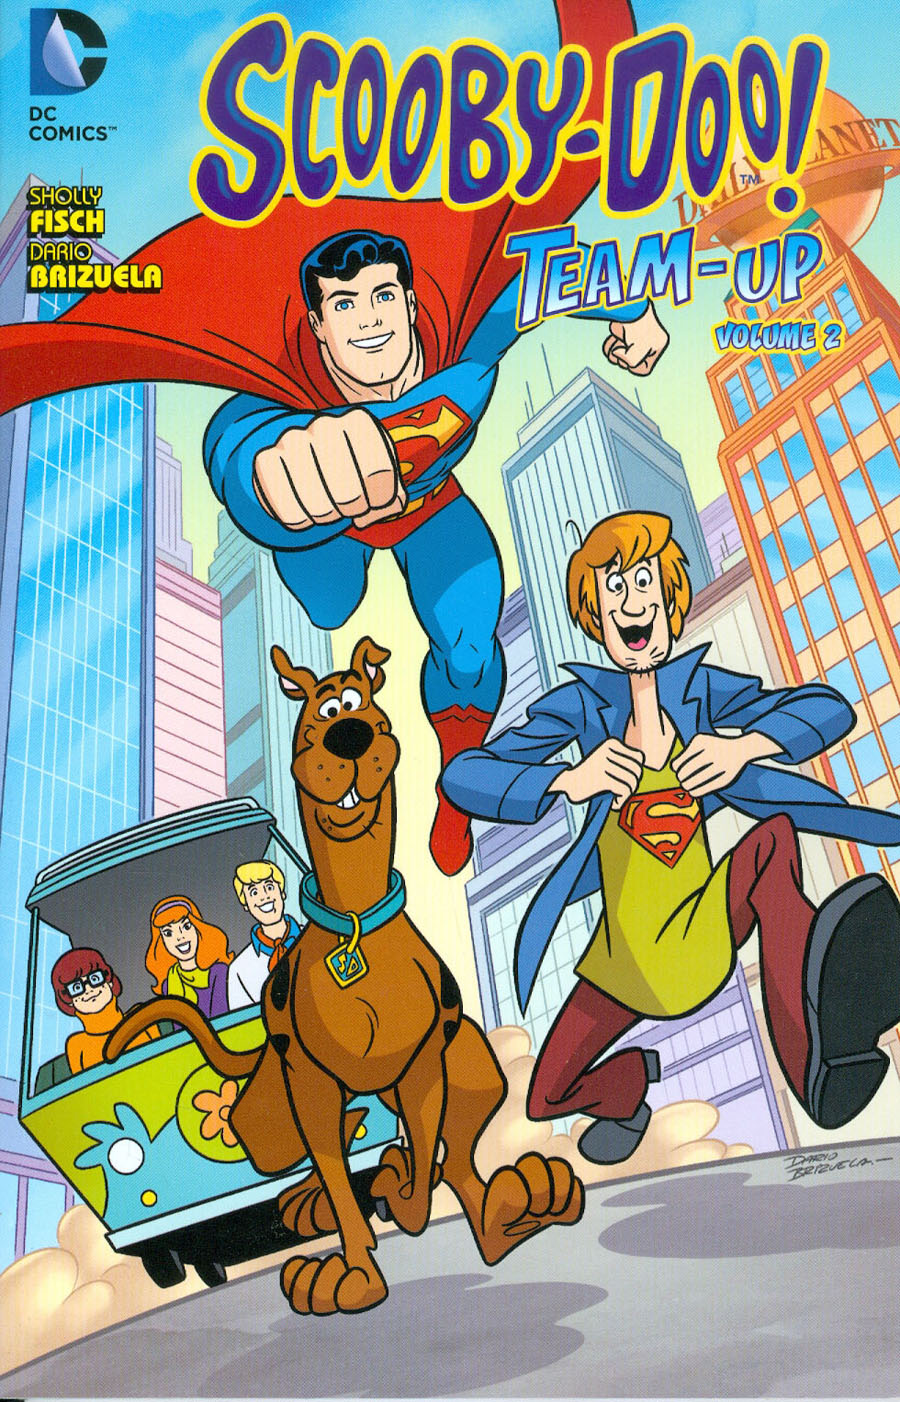 Scooby-Doo Team-Up Vol 2 TP